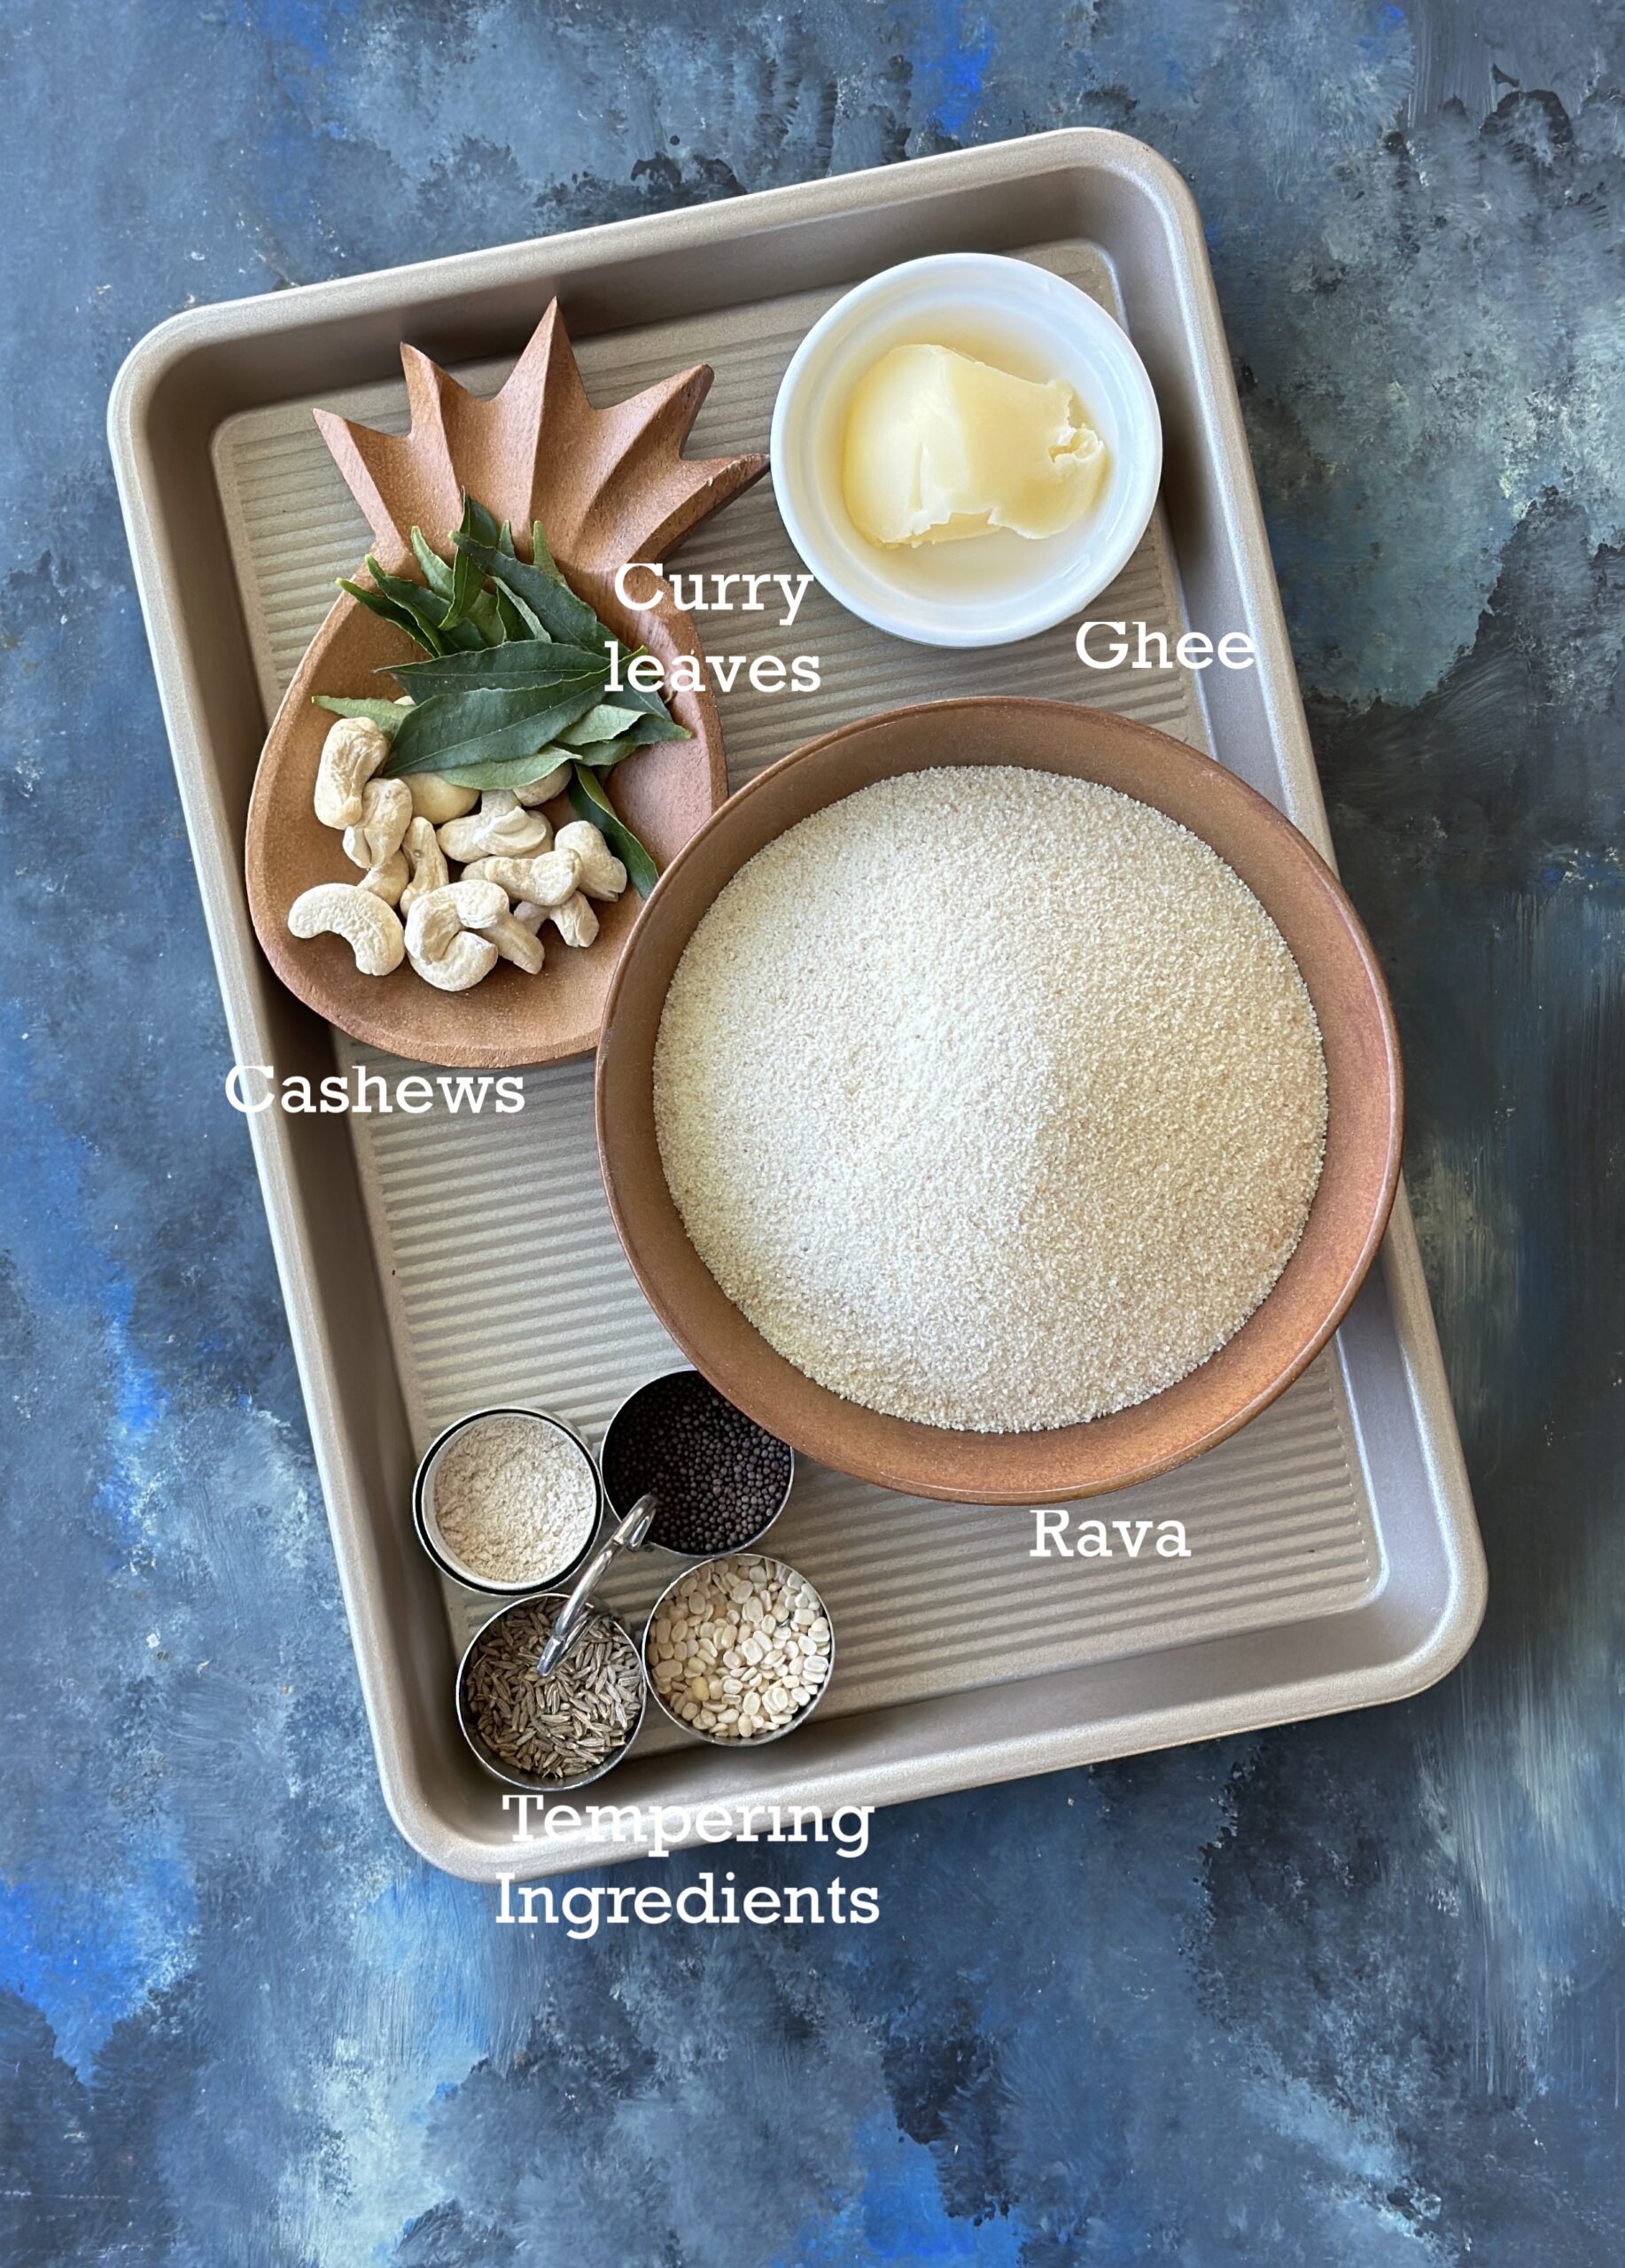 Ingredients for rava mixture; rava, ghee and tempering ingredients.